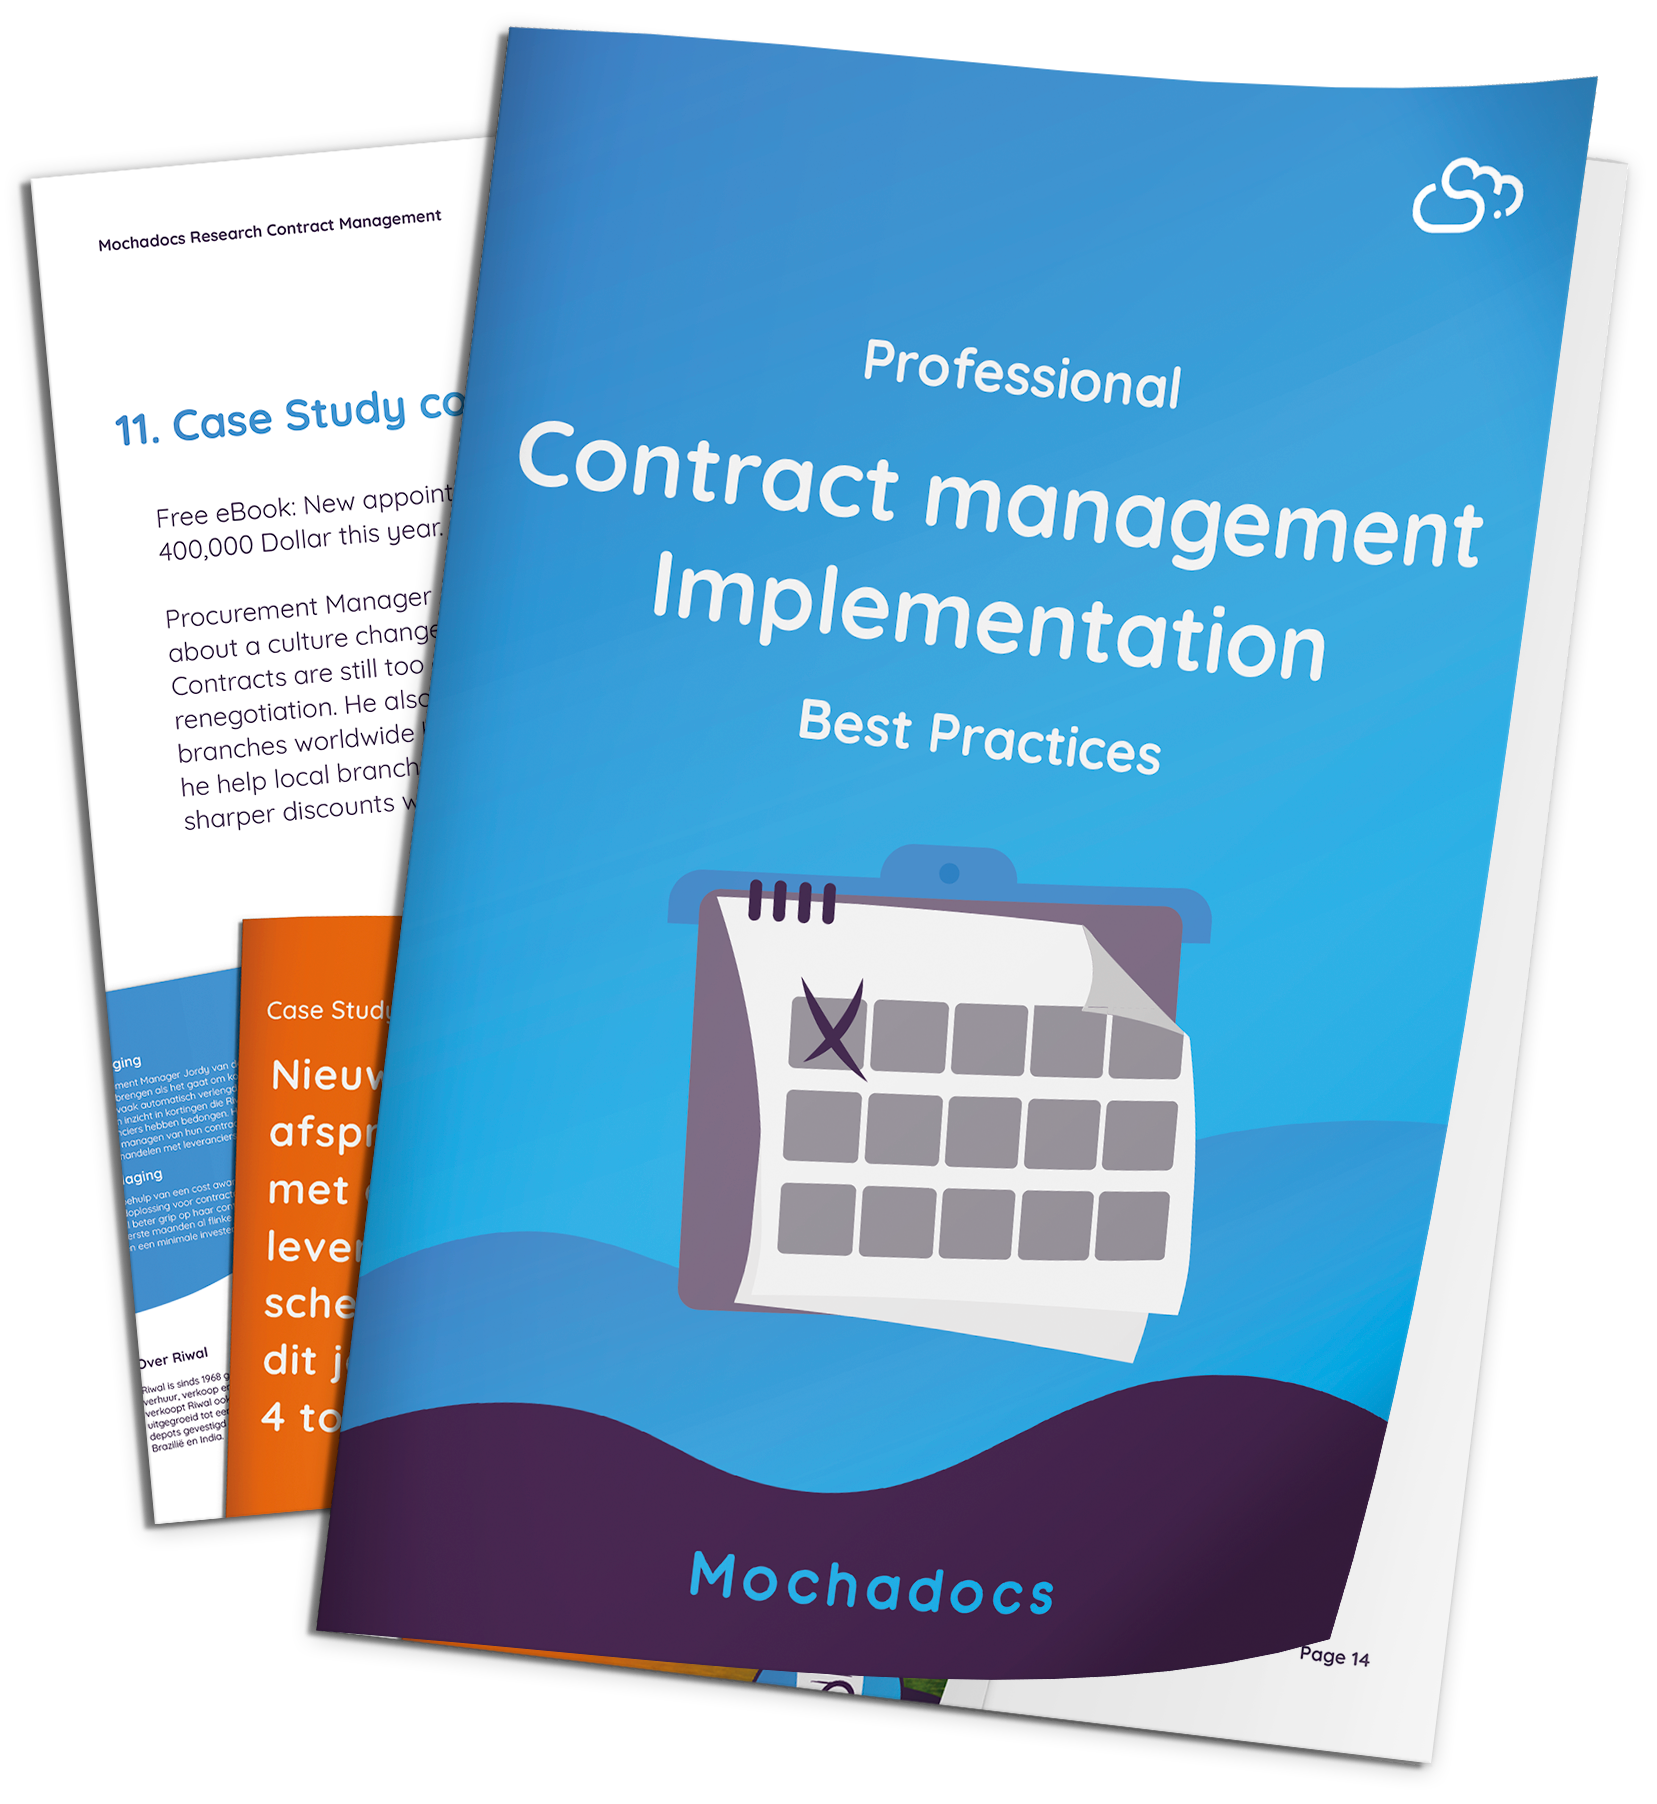 Mochadocs - Contract Management - eBook - Professional Contract Management implementation Best Practices